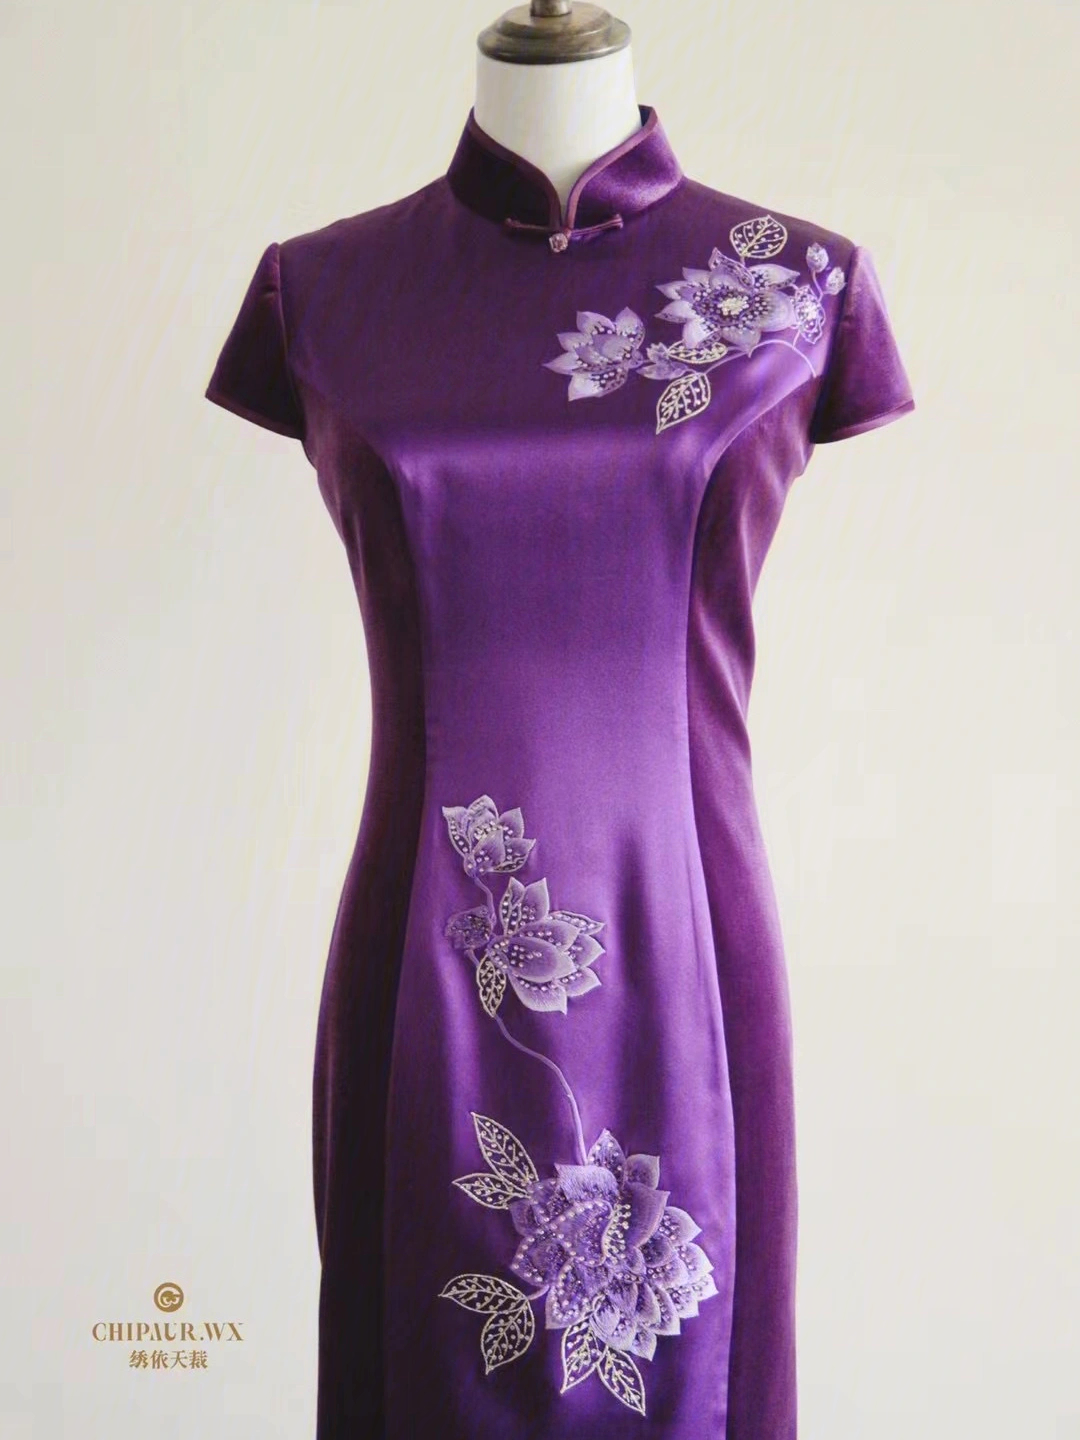 婚礼现场穿妈妈旗袍很大气哦9199这款紫色真丝与丝绒拼接旗袍很